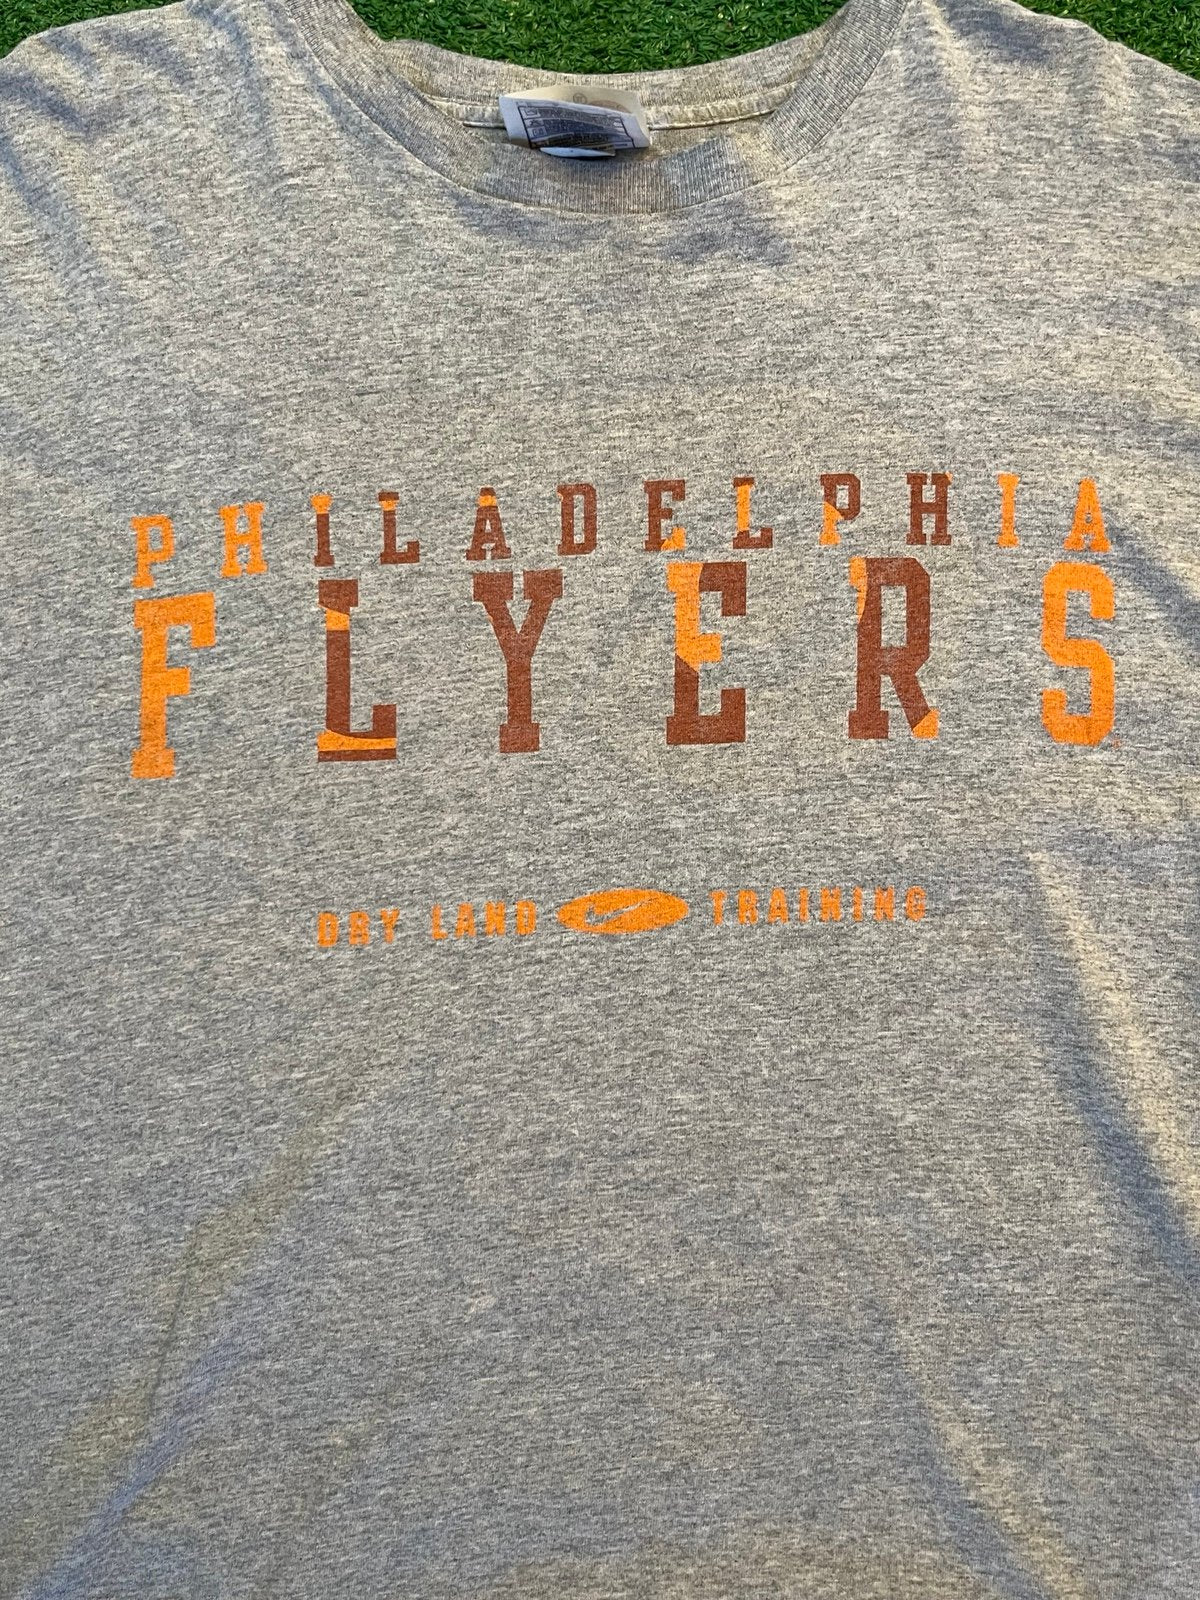 Vintage Team Nike Philadelphia Flyers T Shirt